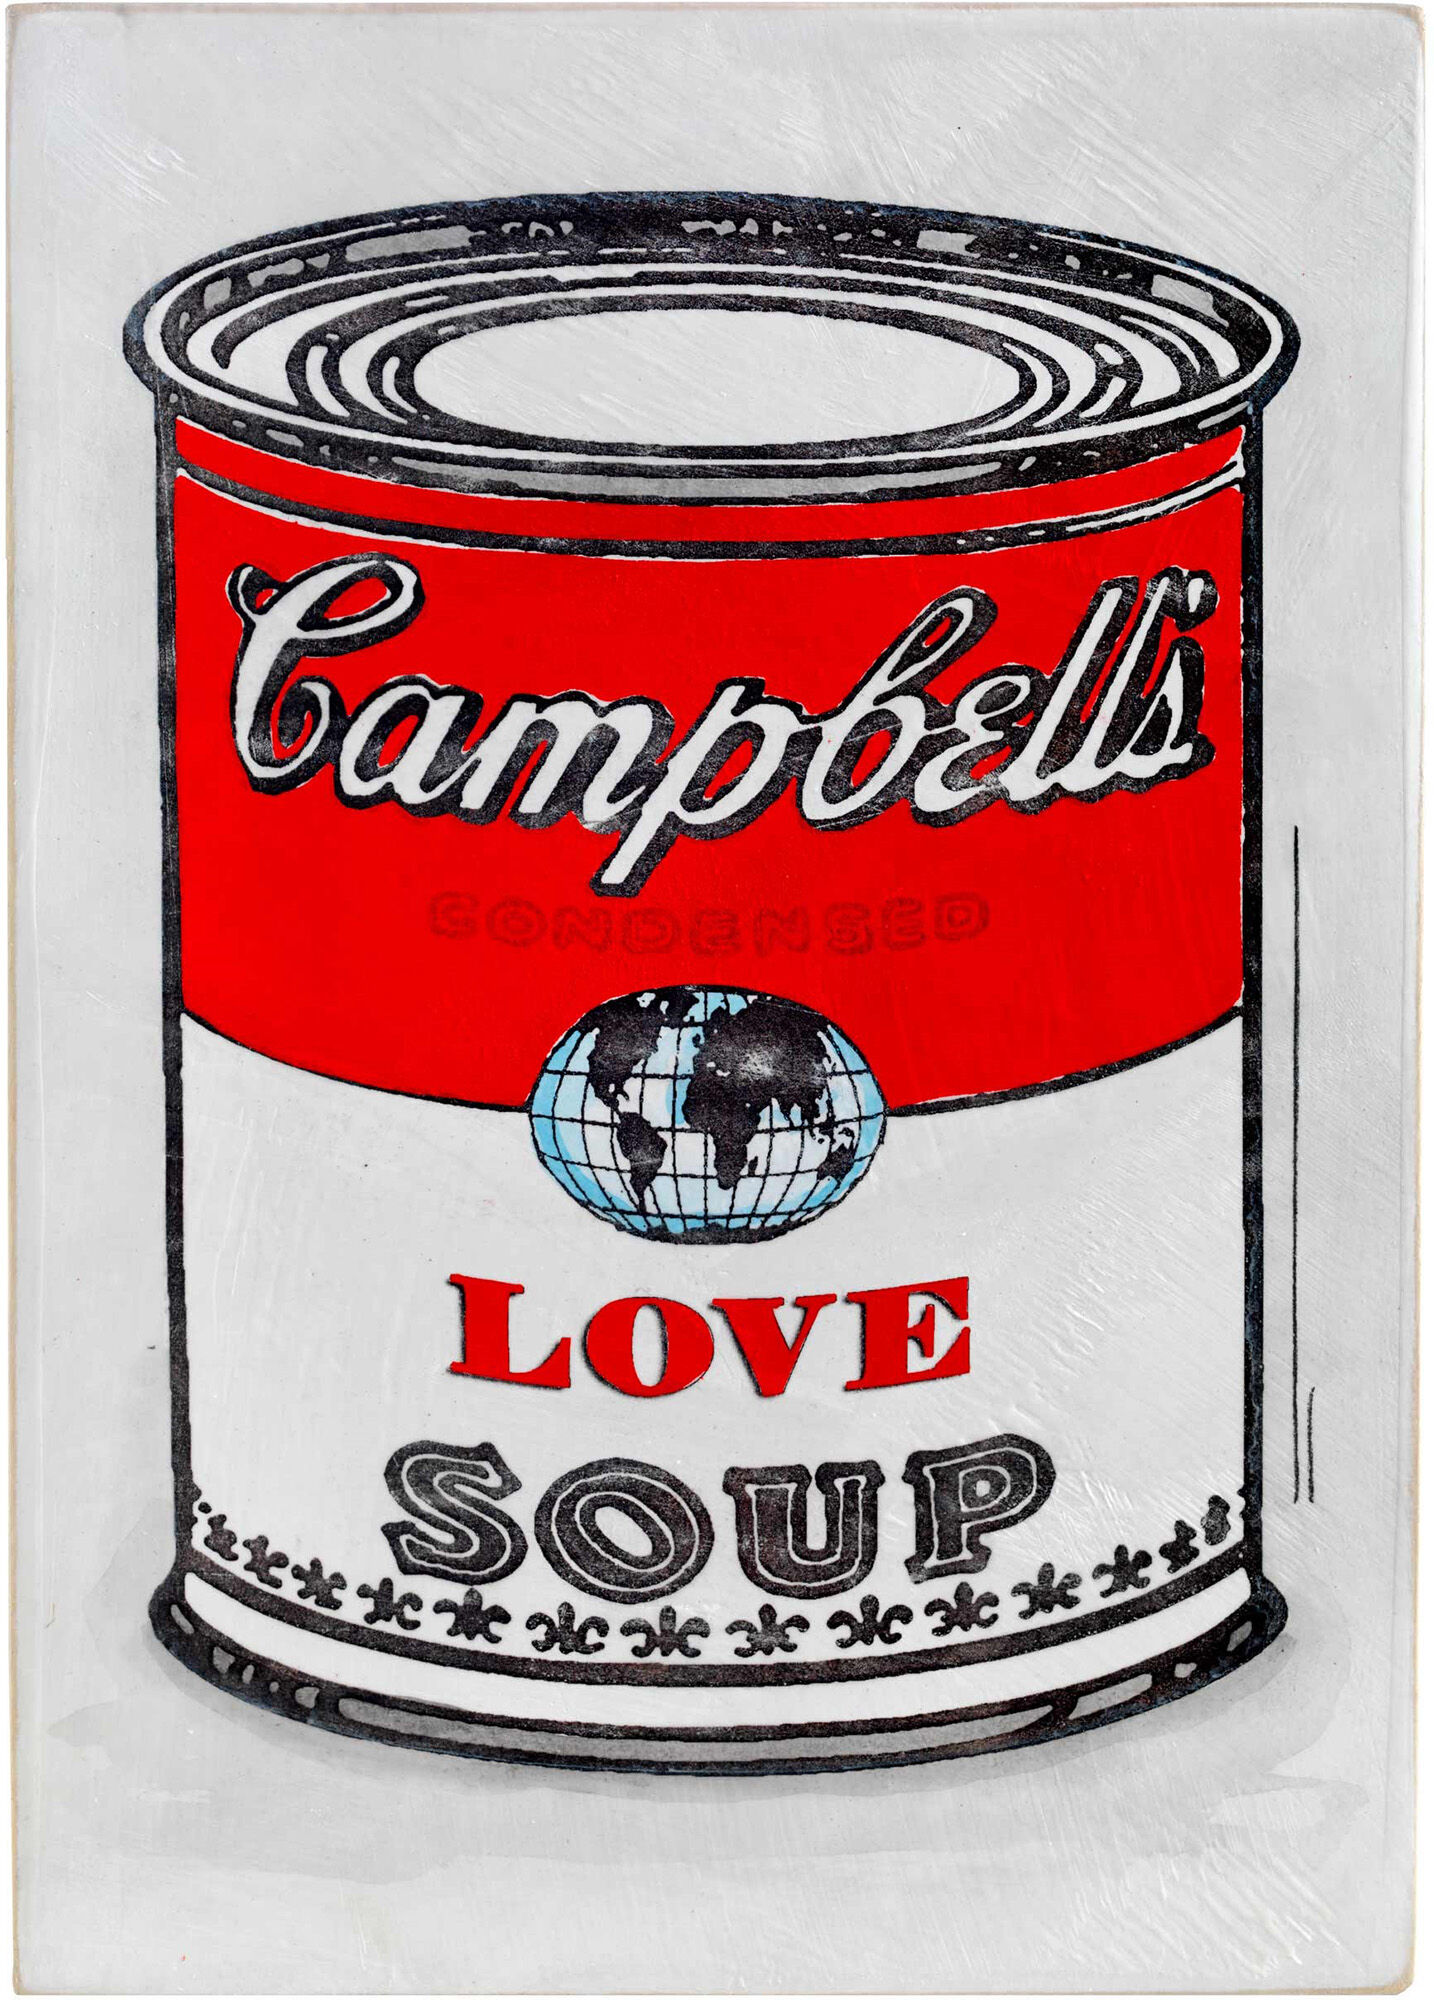 Wall object "LOVE SOUP" (2022) by Jan M. Petersen